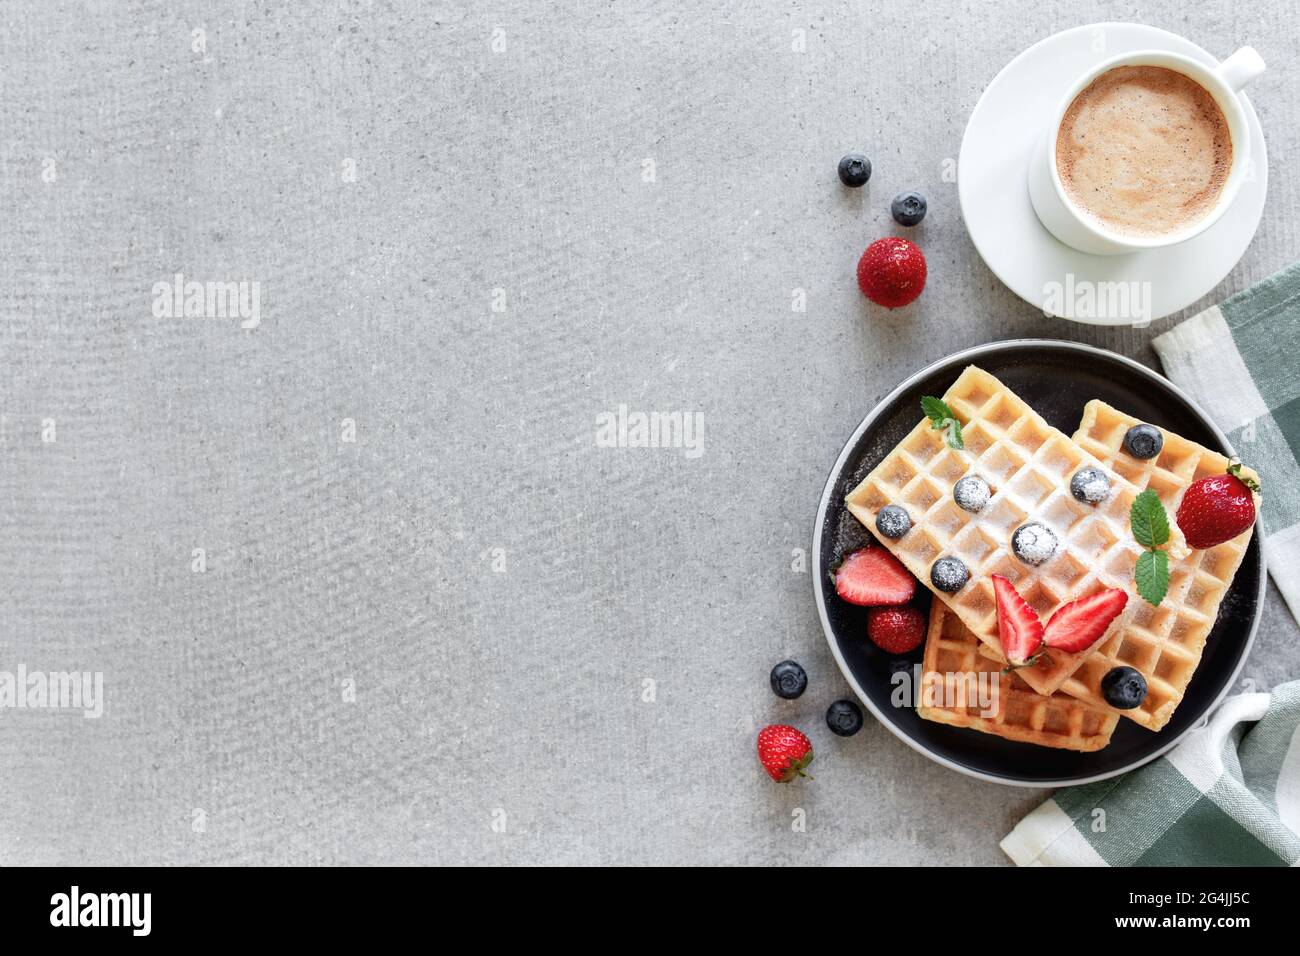 Une pile de gaufres en poudre de sucre avec du miel sur une assiette sur la serviette et une table en béton ou ardoise gris avec des feuilles de myrtille, de fraise hachée et de menthe Banque D'Images